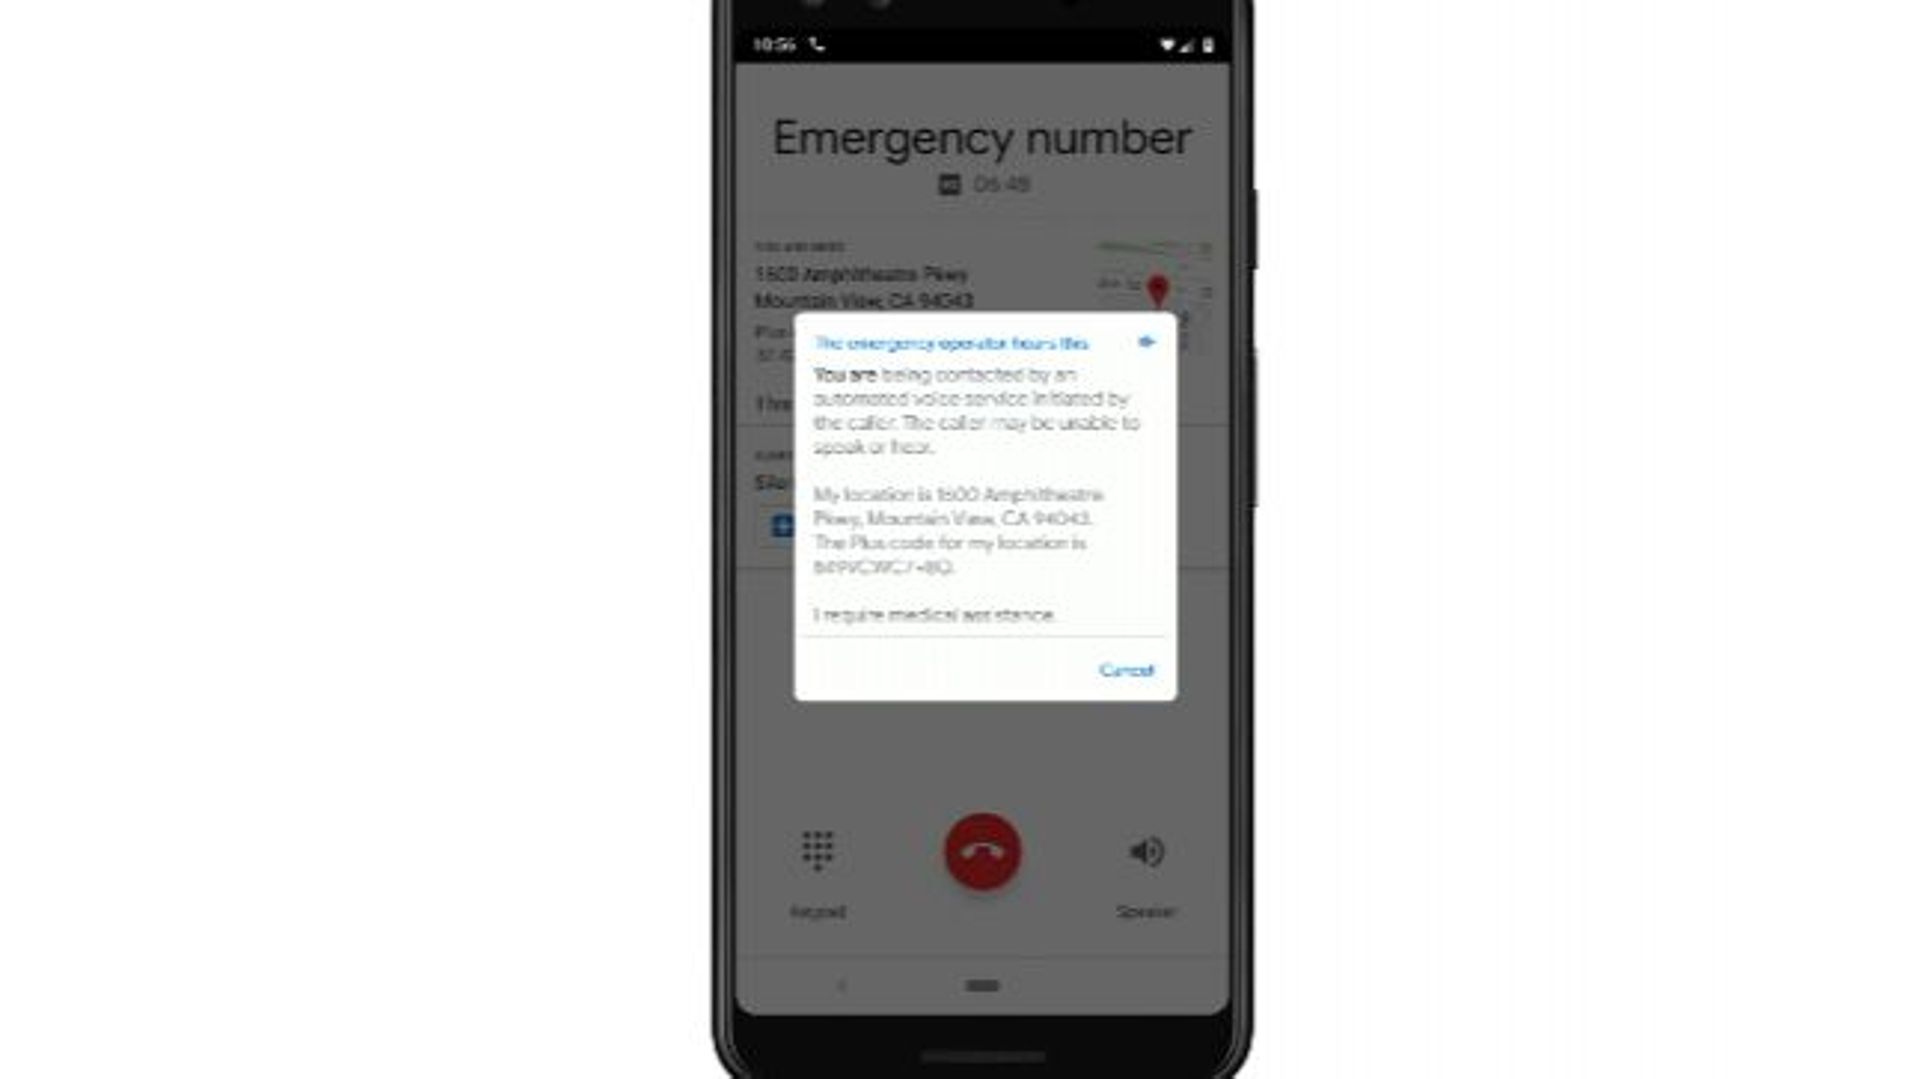 Google veut proposer un service d'appels d'urgence totalement automatisé.